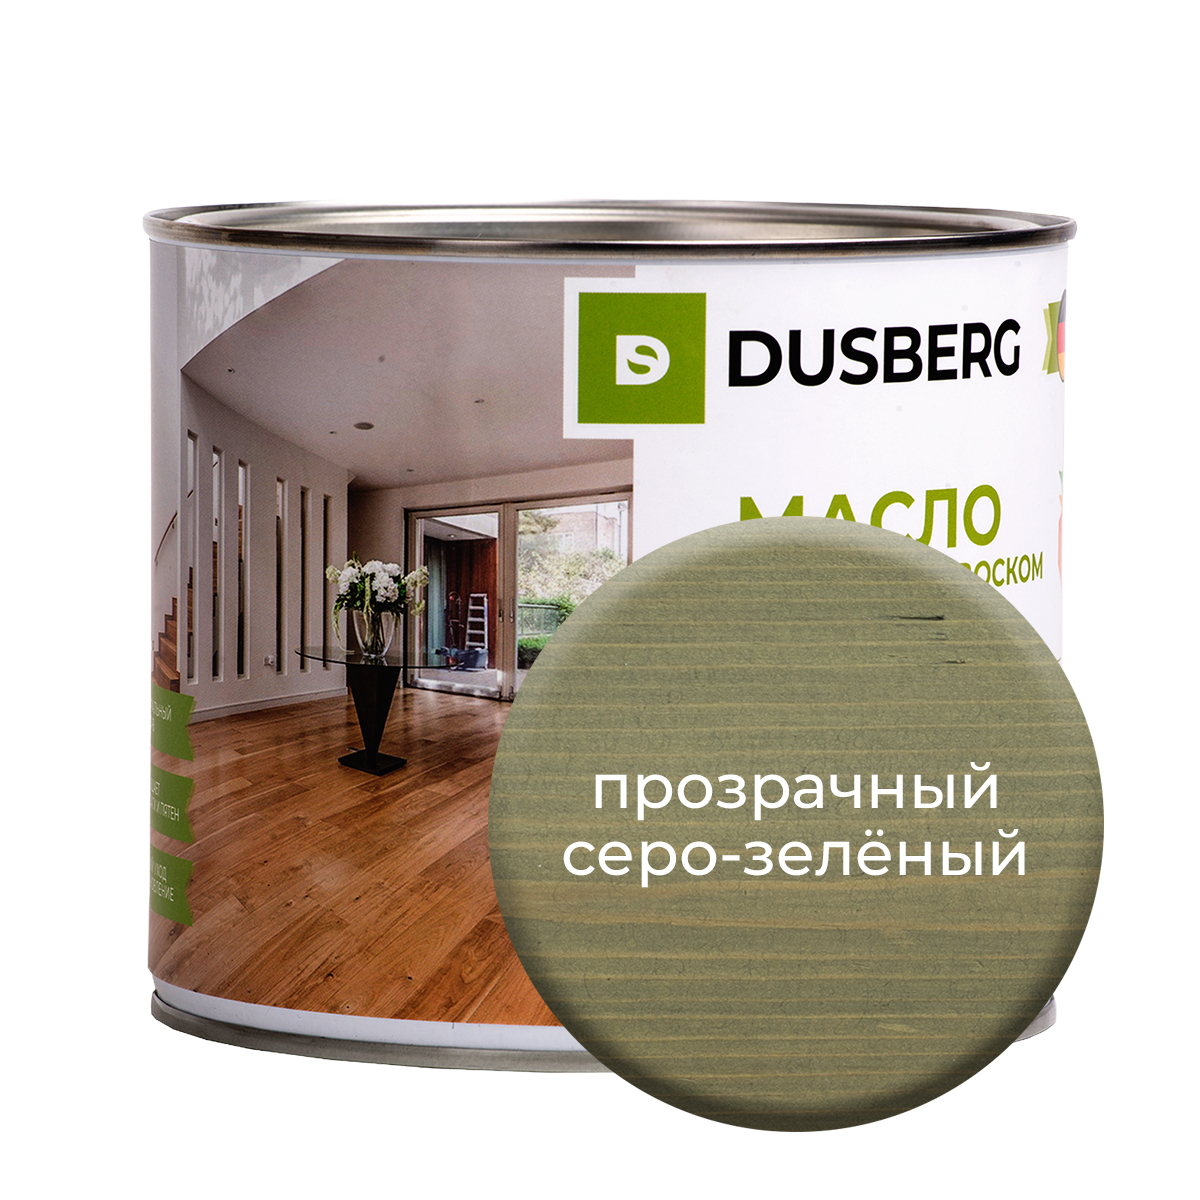 Масло Dusberg с твердым воском на бесцветной основе, 2 л Прозрачный серо-зеленый масло воск для террасной доски brite flexx бес ное банка 2 5 л 212476